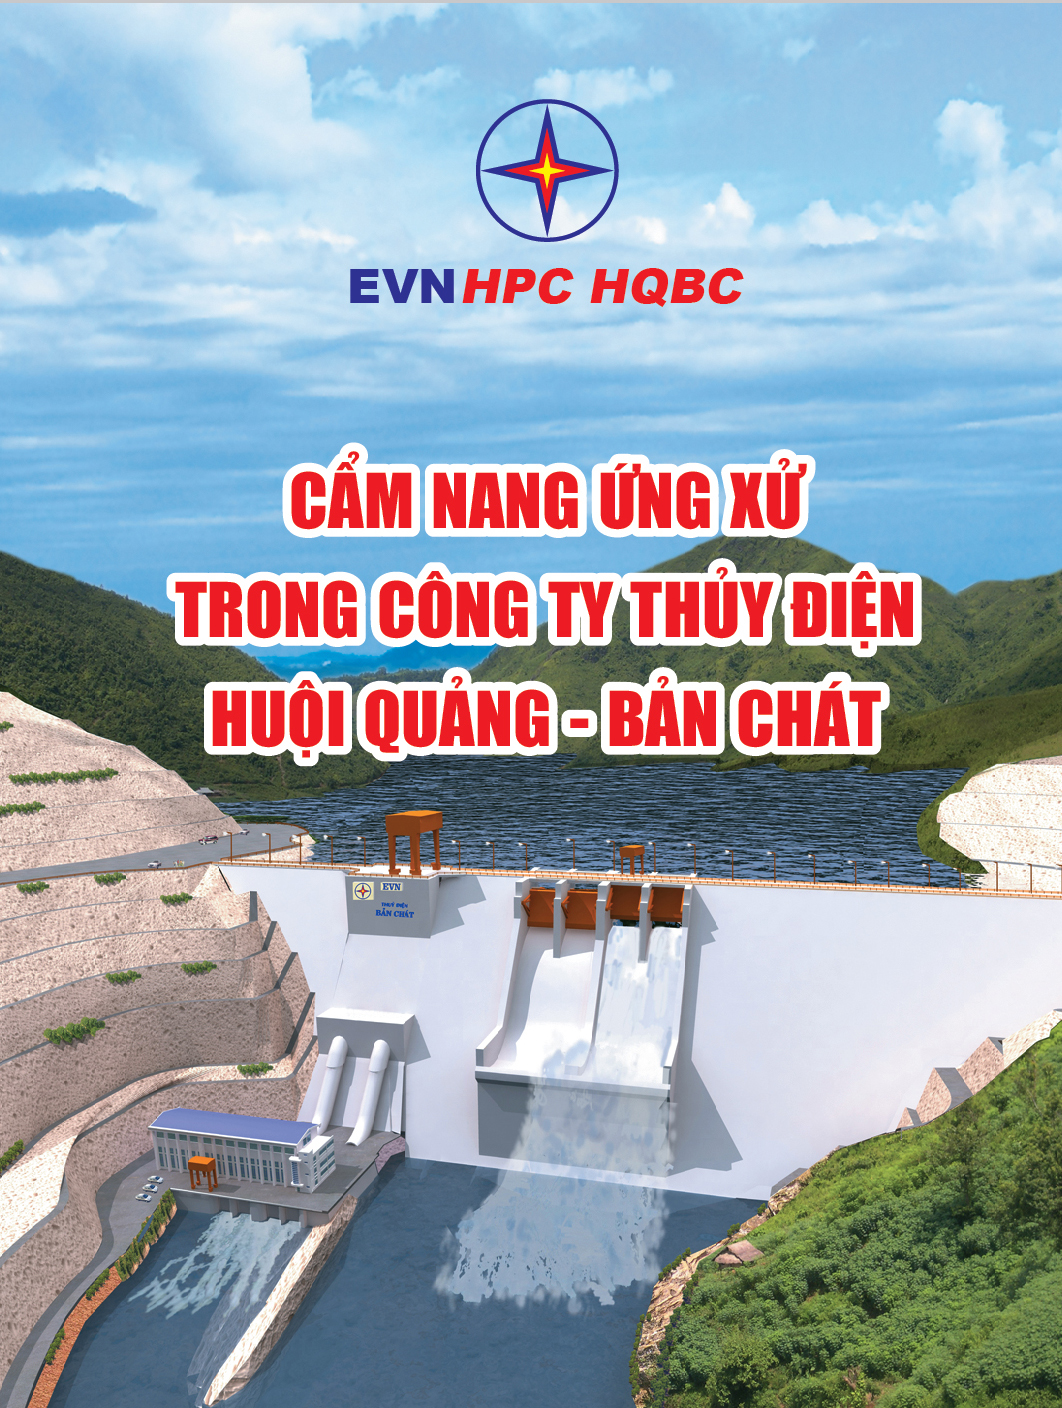 Cẩm nang văn hóa ứng xử trong Công ty Thủy điện Huội Quảng - Bản Chát